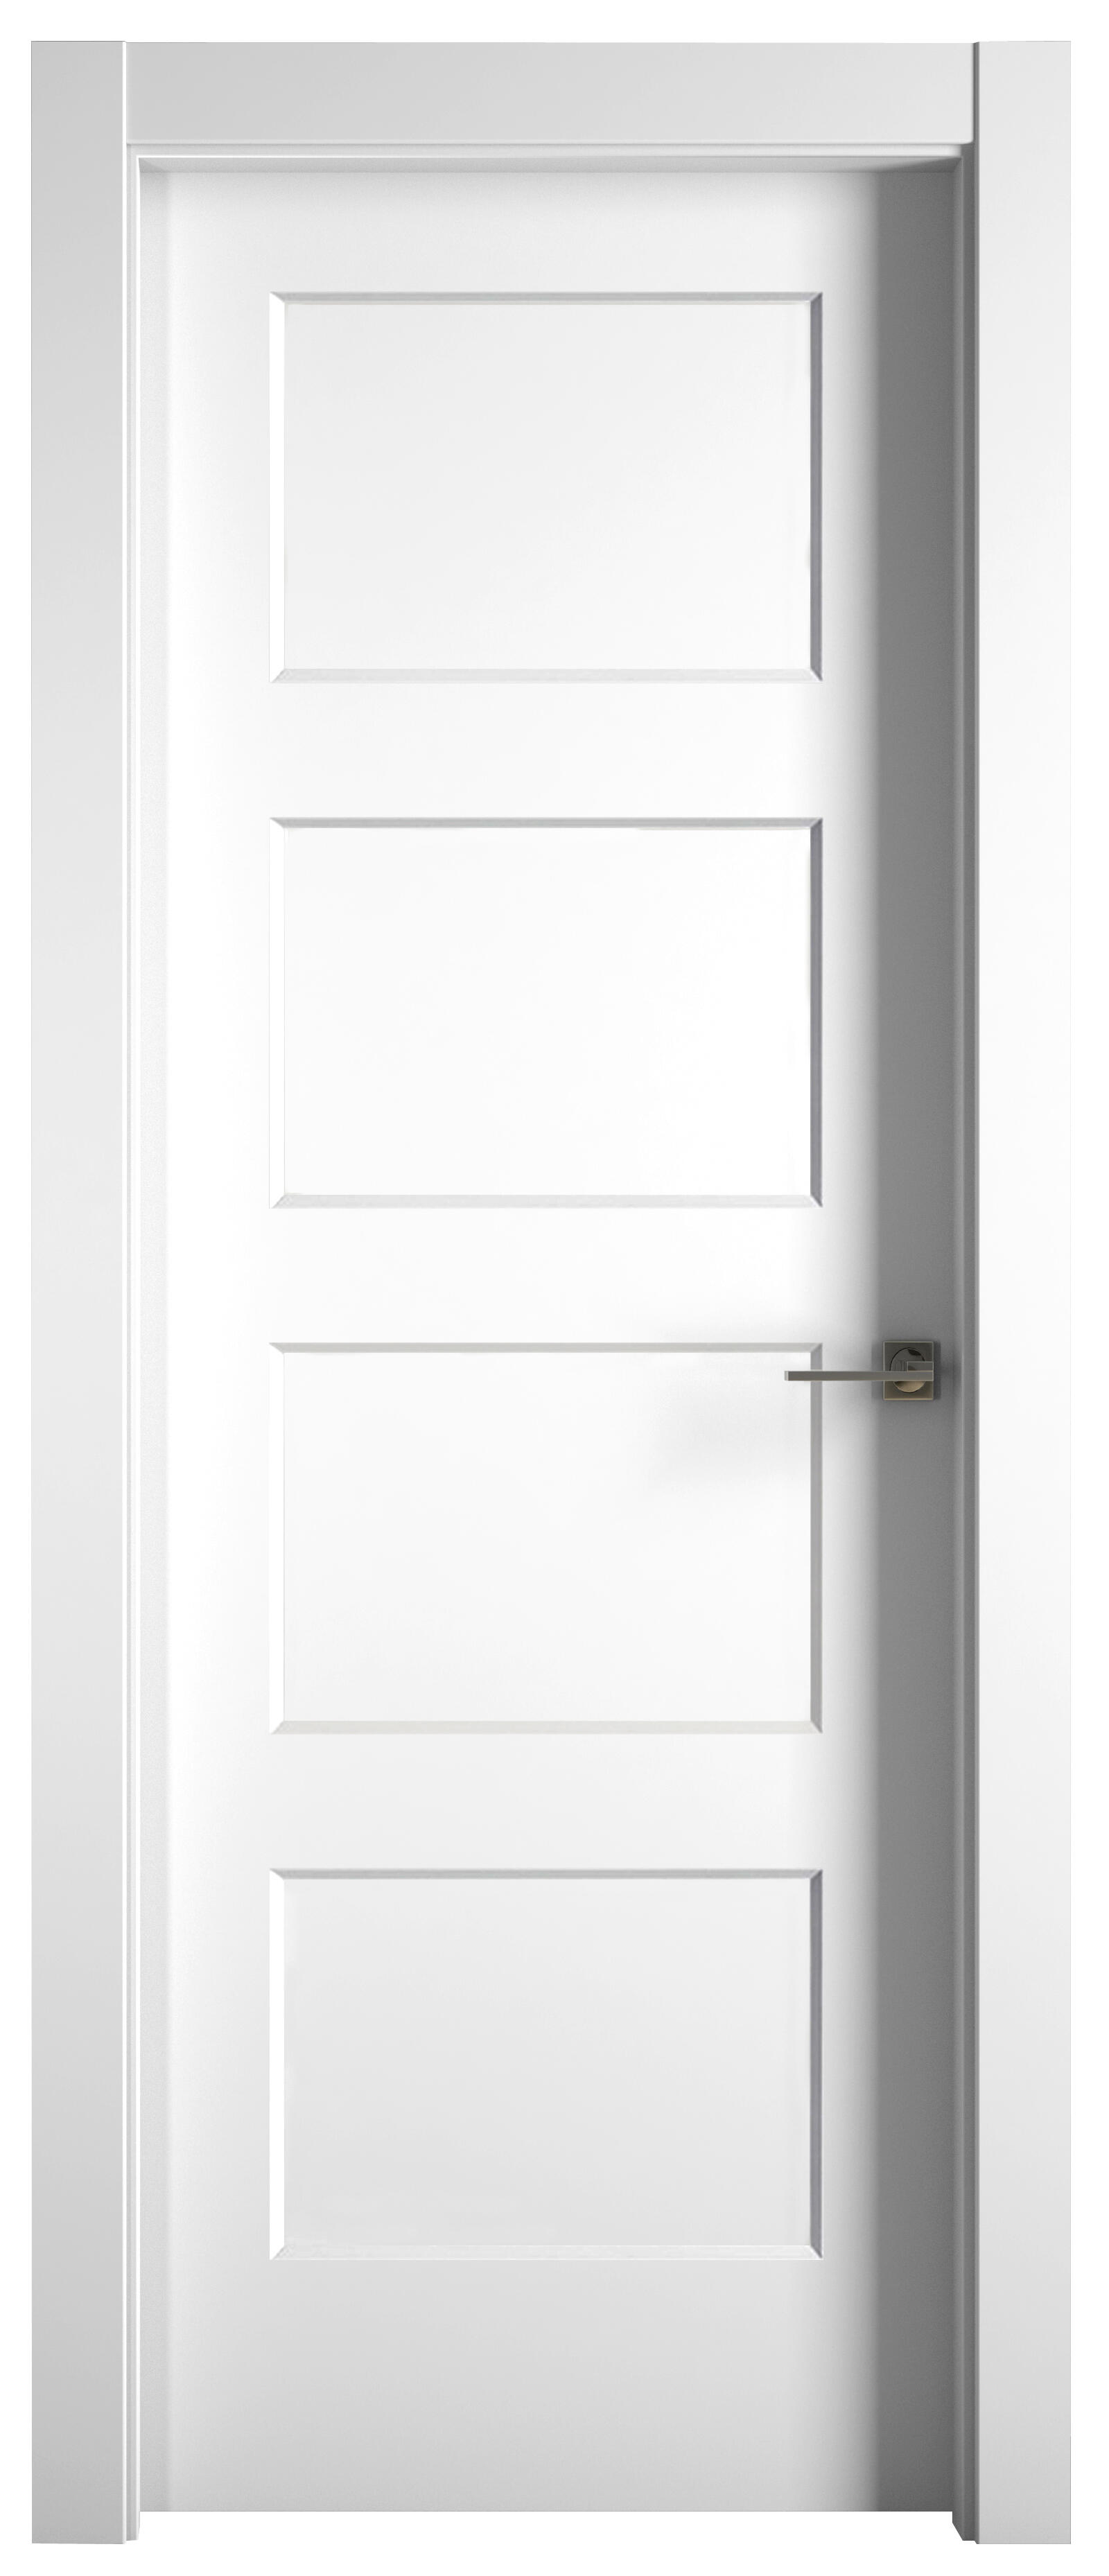 Puerta abatible bosco blanca premium apertura izquierda de 9x125 cm